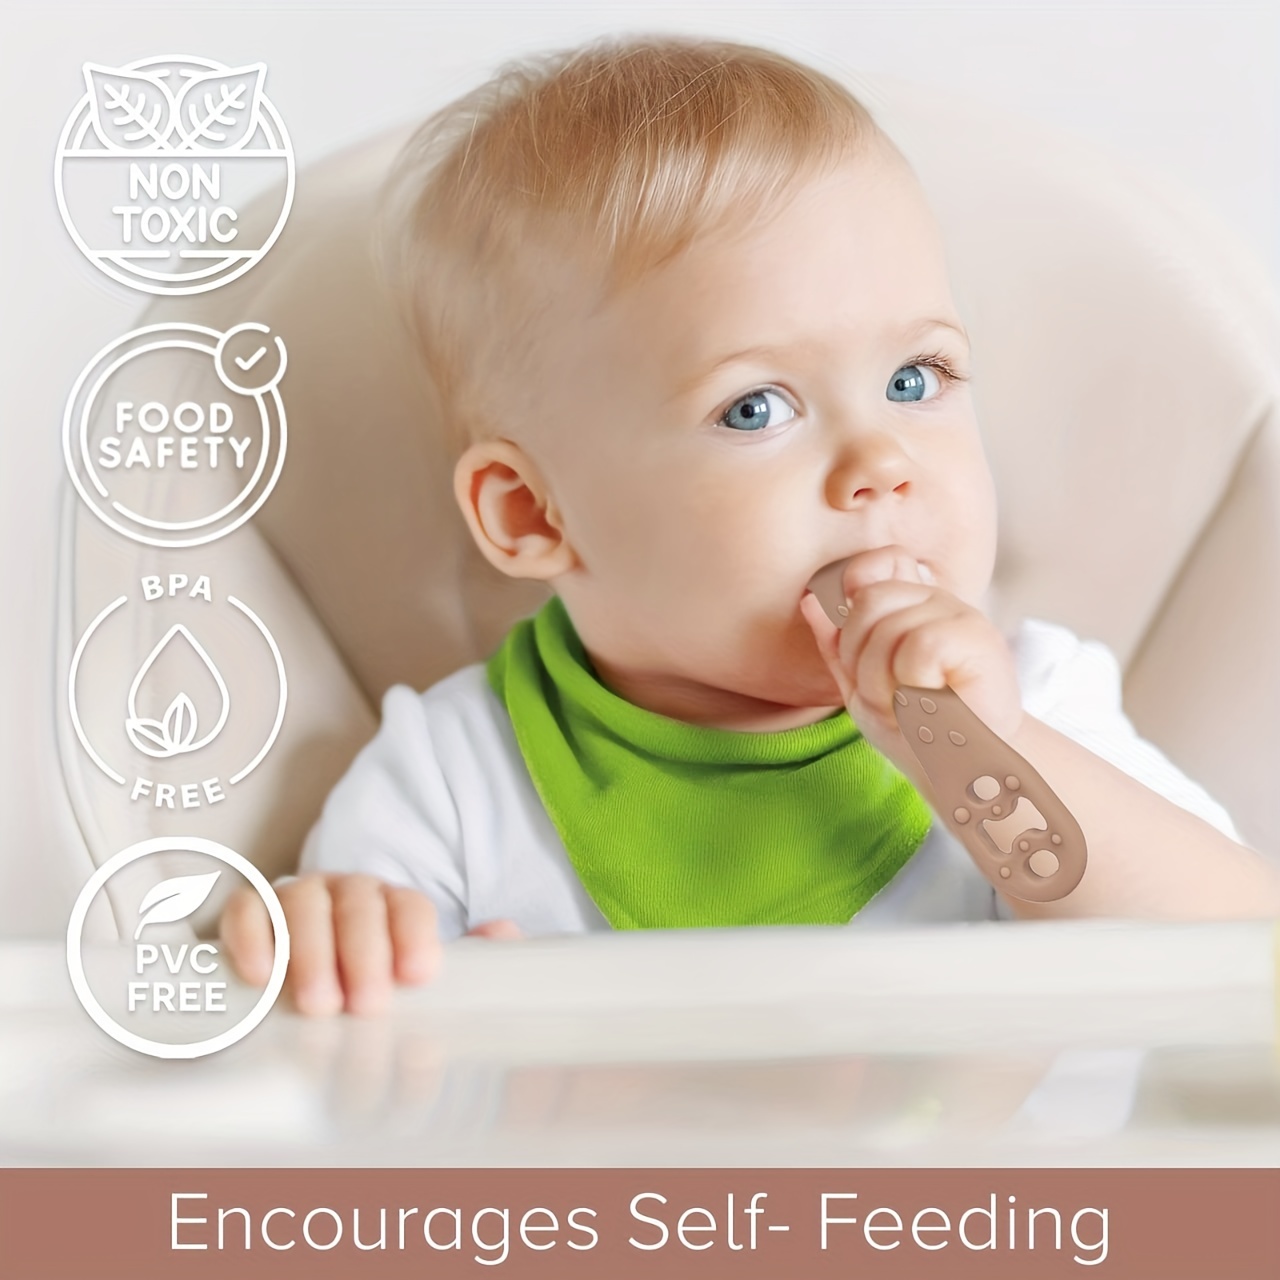 Silicone Baby Feeding Spoon, Baby Self Feeding Spoon